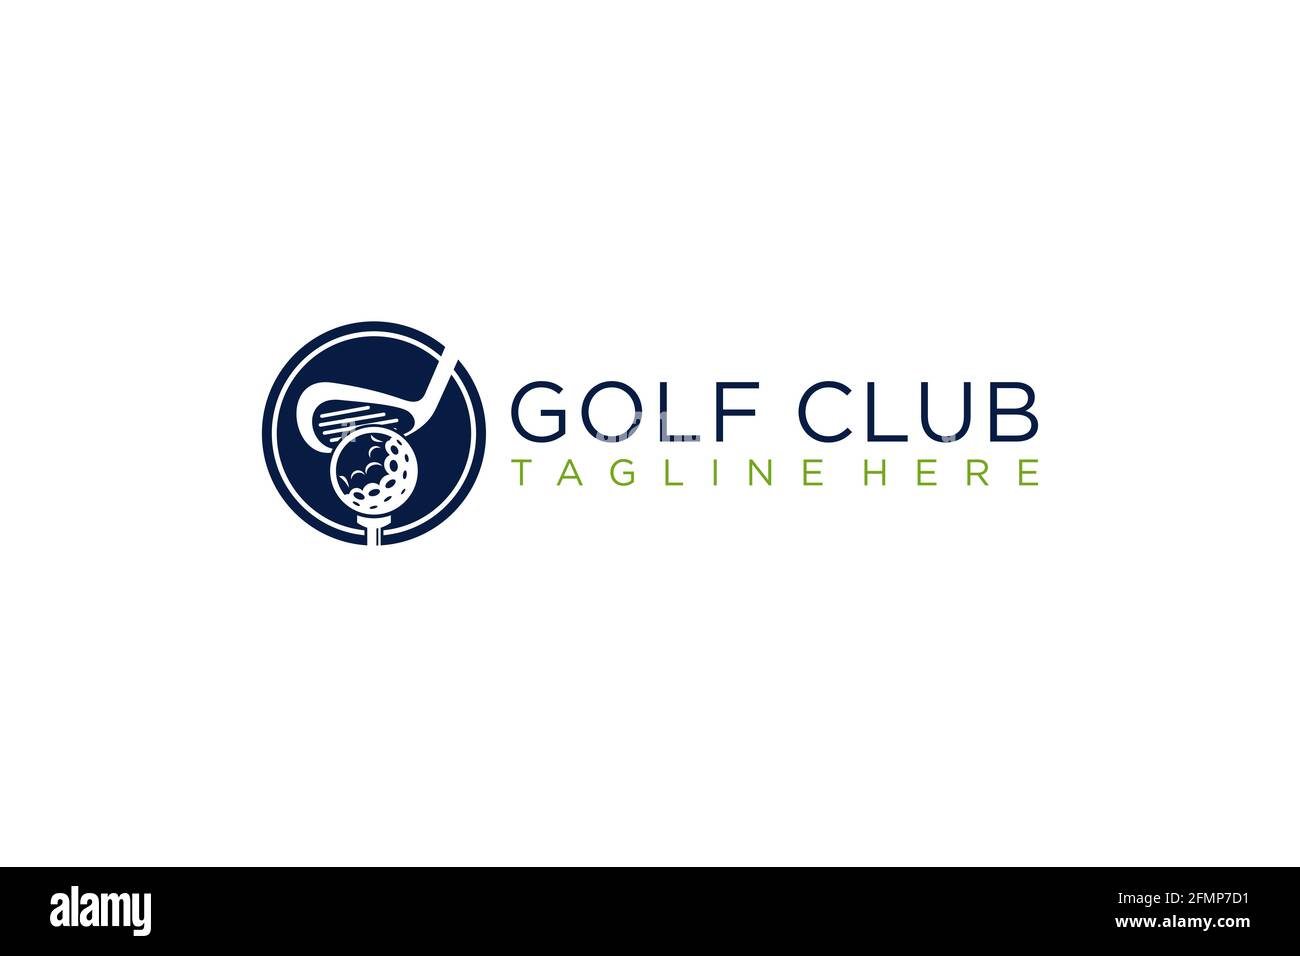 Icone, simboli, elementi e vettore di logo del club di golf. Illustrazione Vettoriale